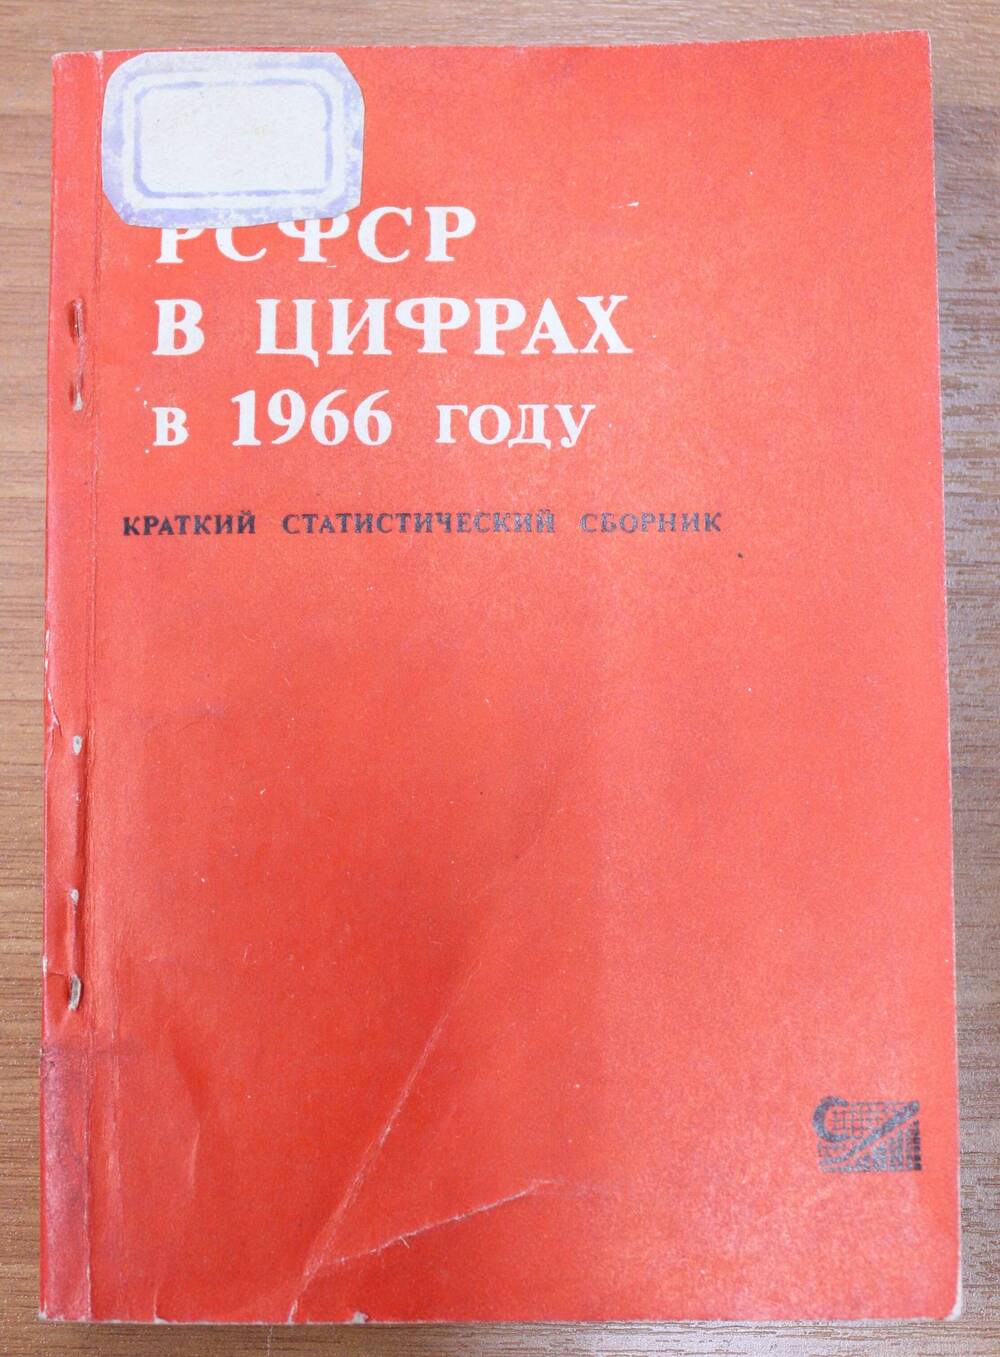 Книга. РСФСР в цифрах в 1966 году. Краткий статистический сборник.